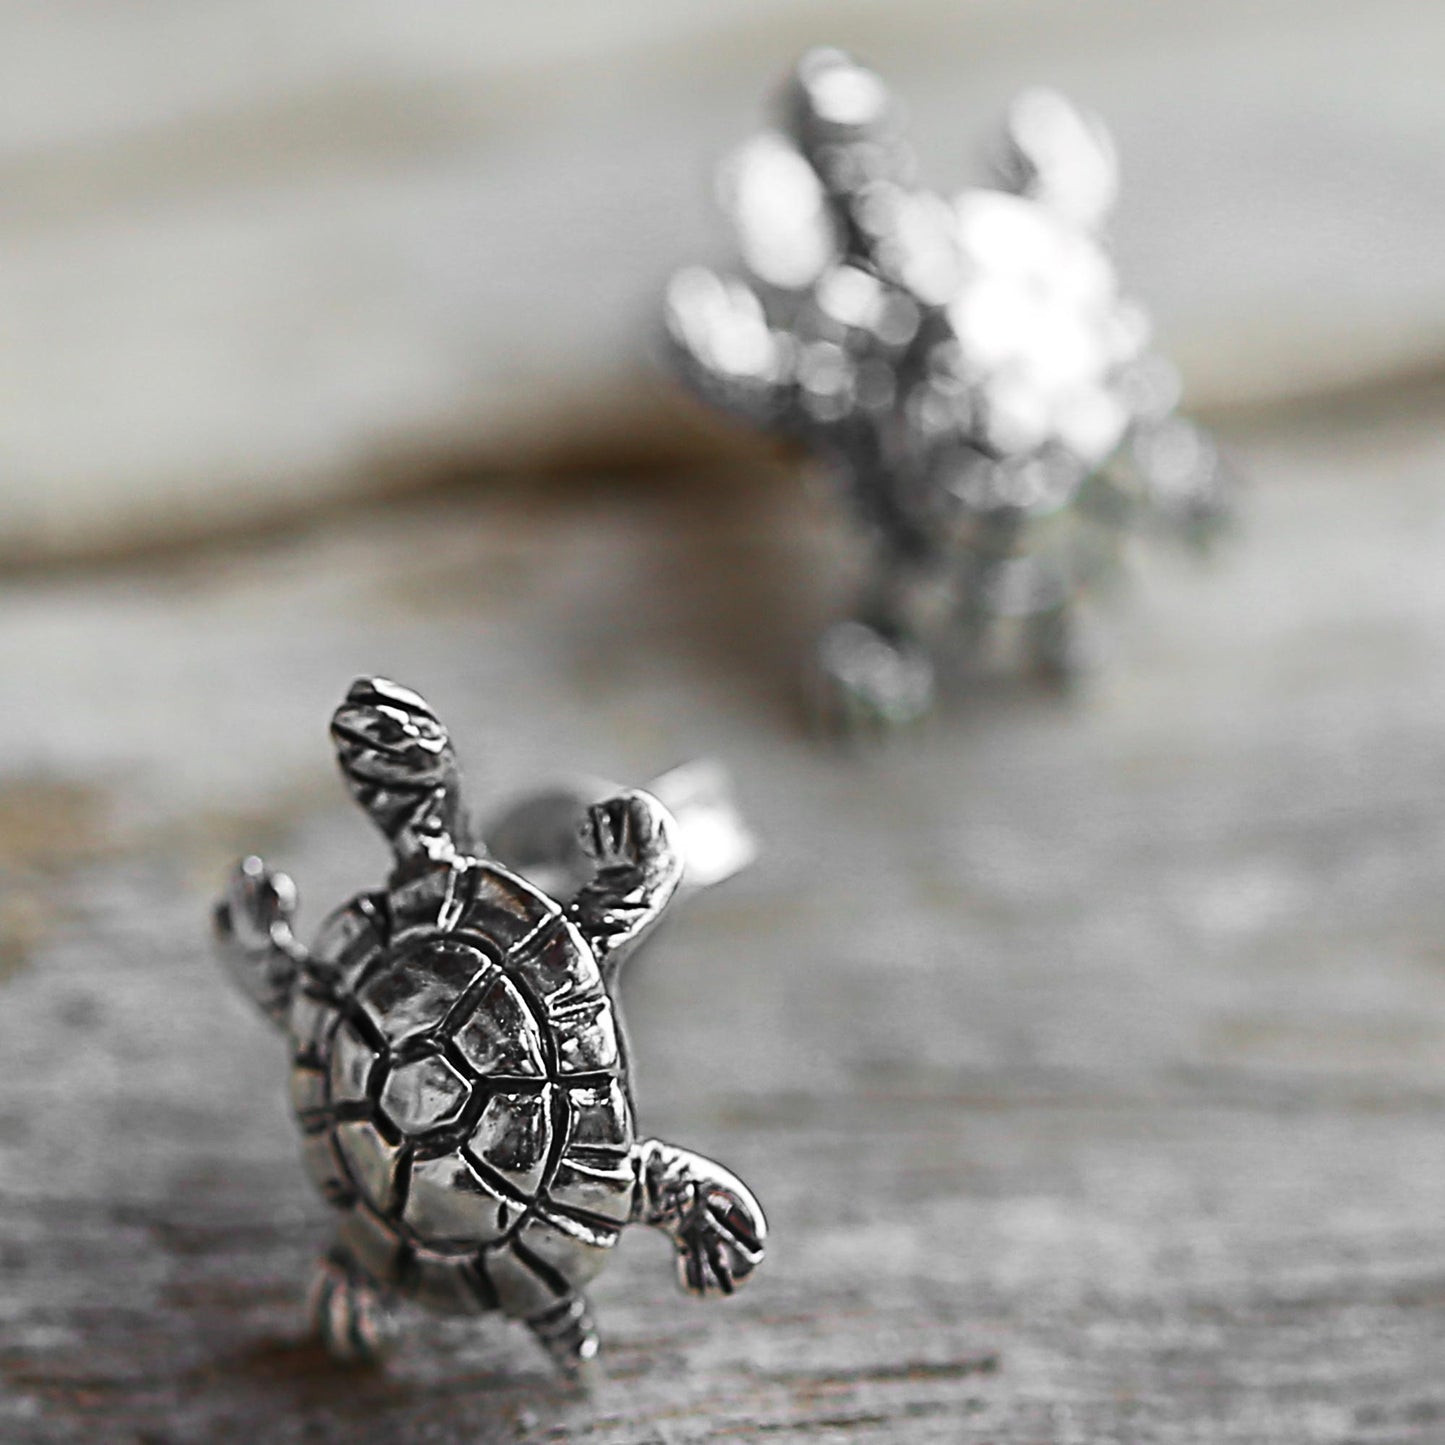 Little Turtles Silver Button Earrings